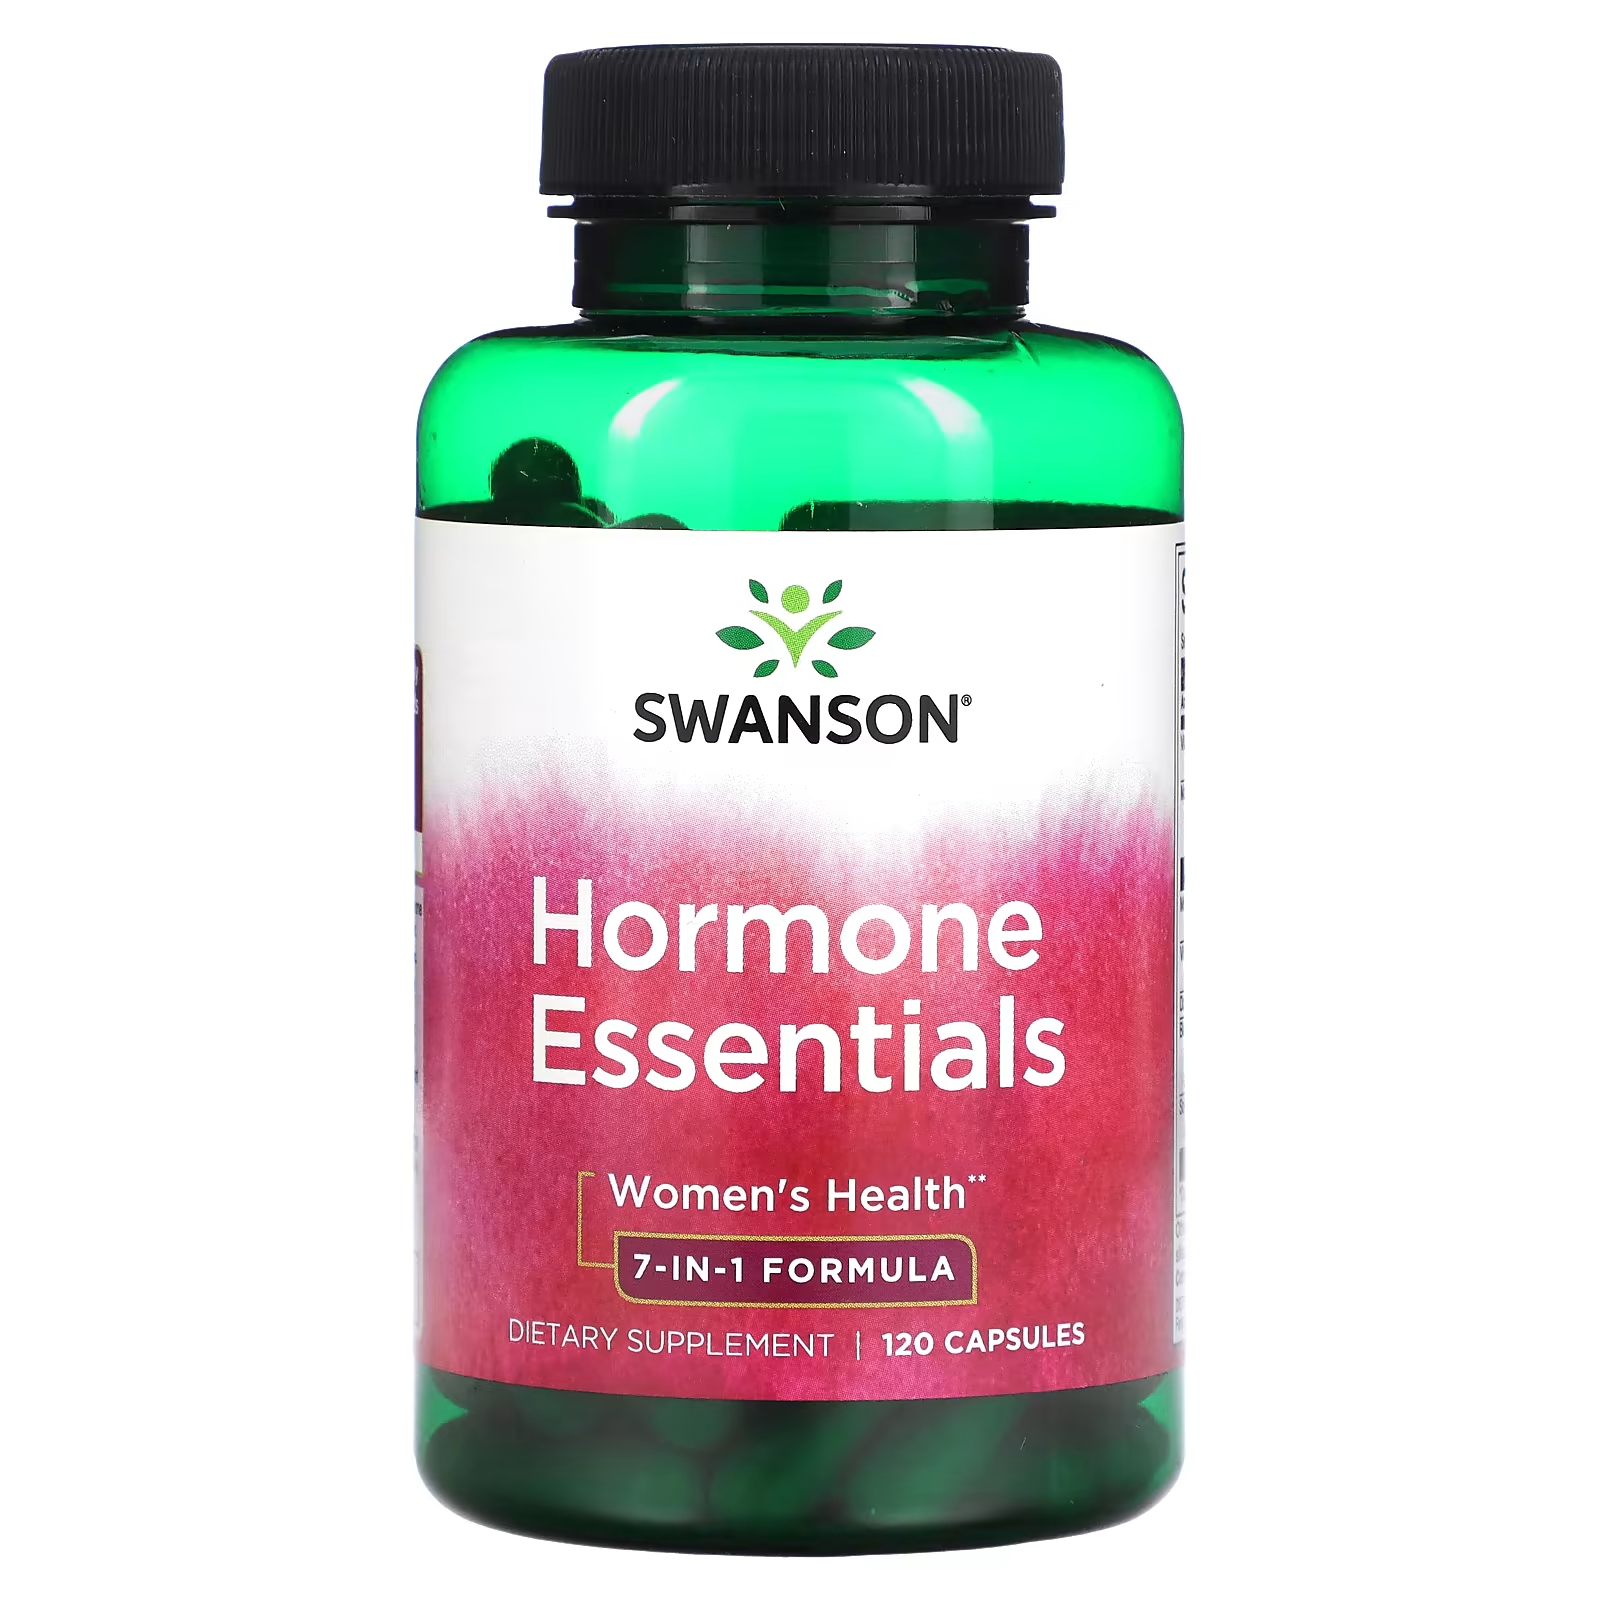 Витамины для женщин Swanson Hormone Essentials женское здоровье, 120 капсул витамины для женщин trubiotics пищеварение женское здоровье здоровье костей 30 капсул